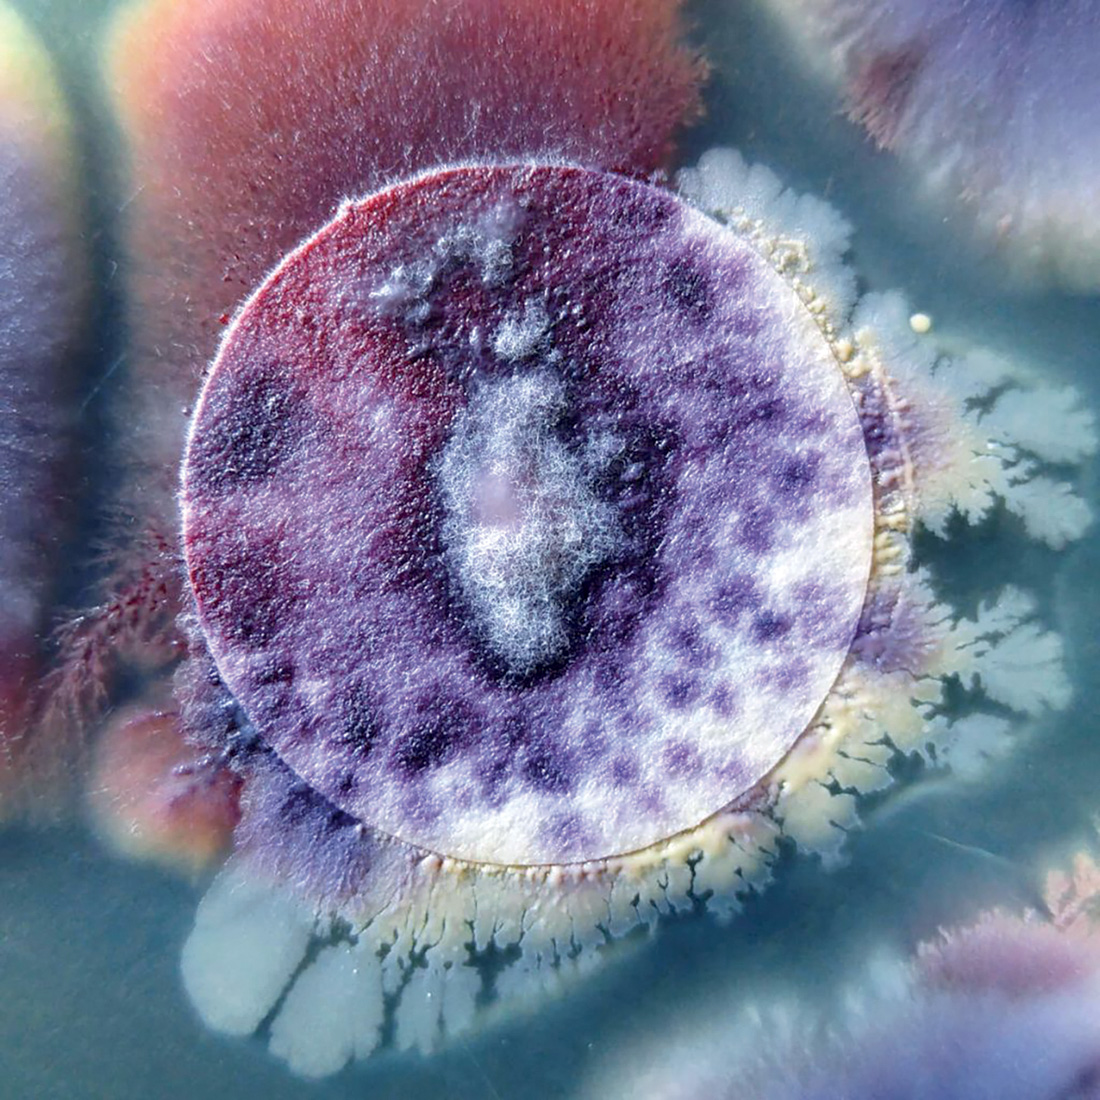 *Candida albicans* vista mediante microscopía electrónica de barrido, 2015. CeNSE, IISc